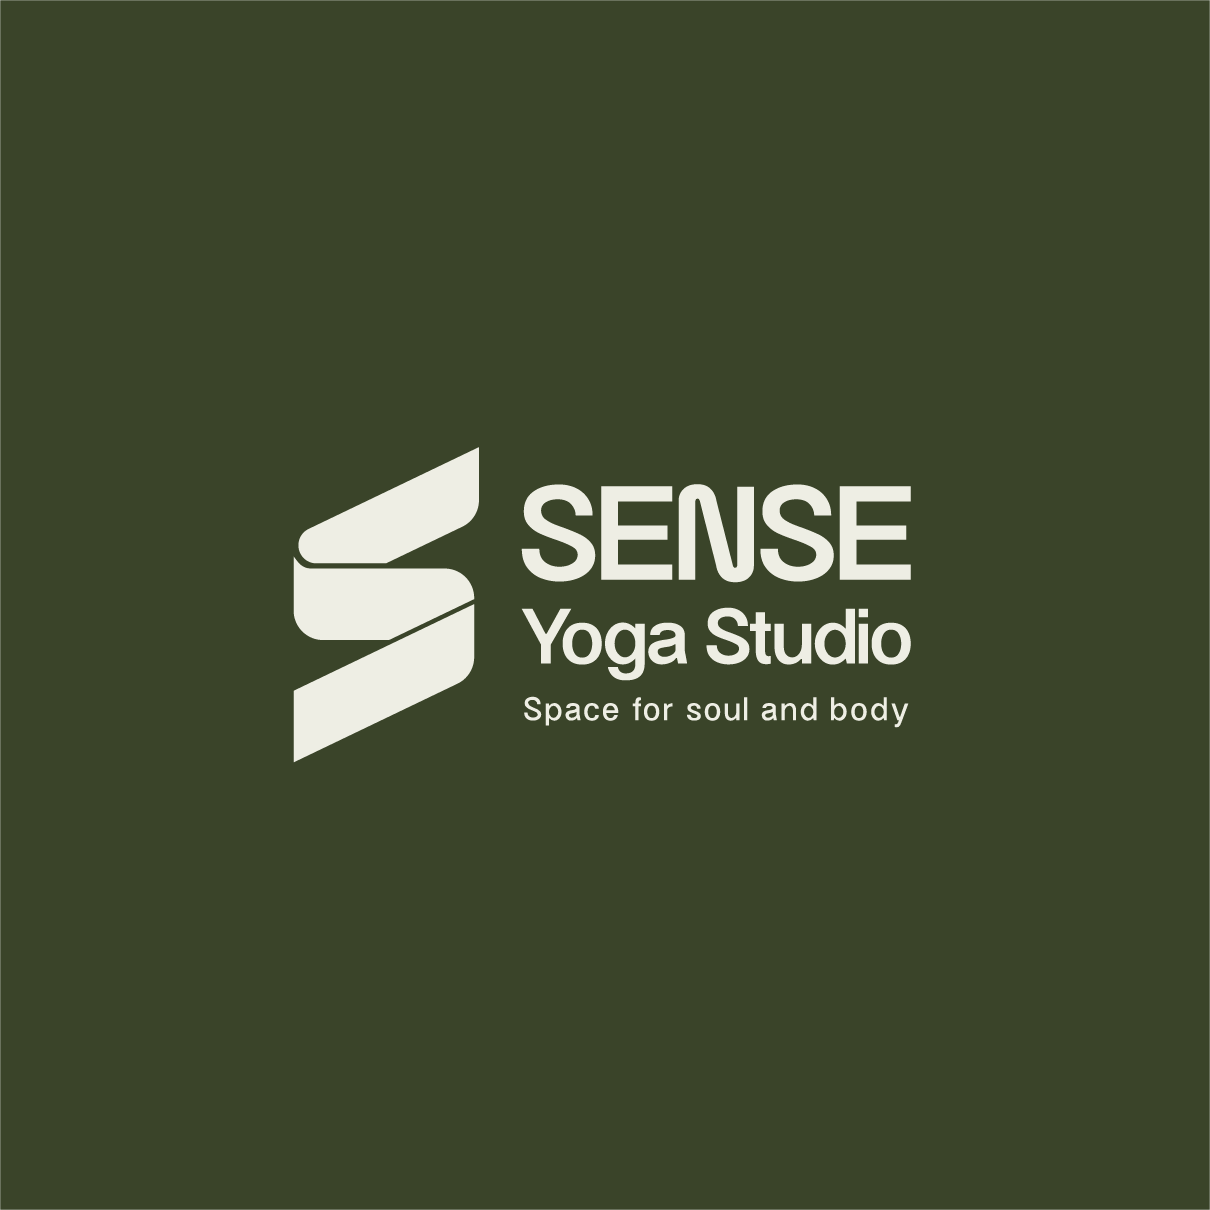 SENSE Yoga Studio